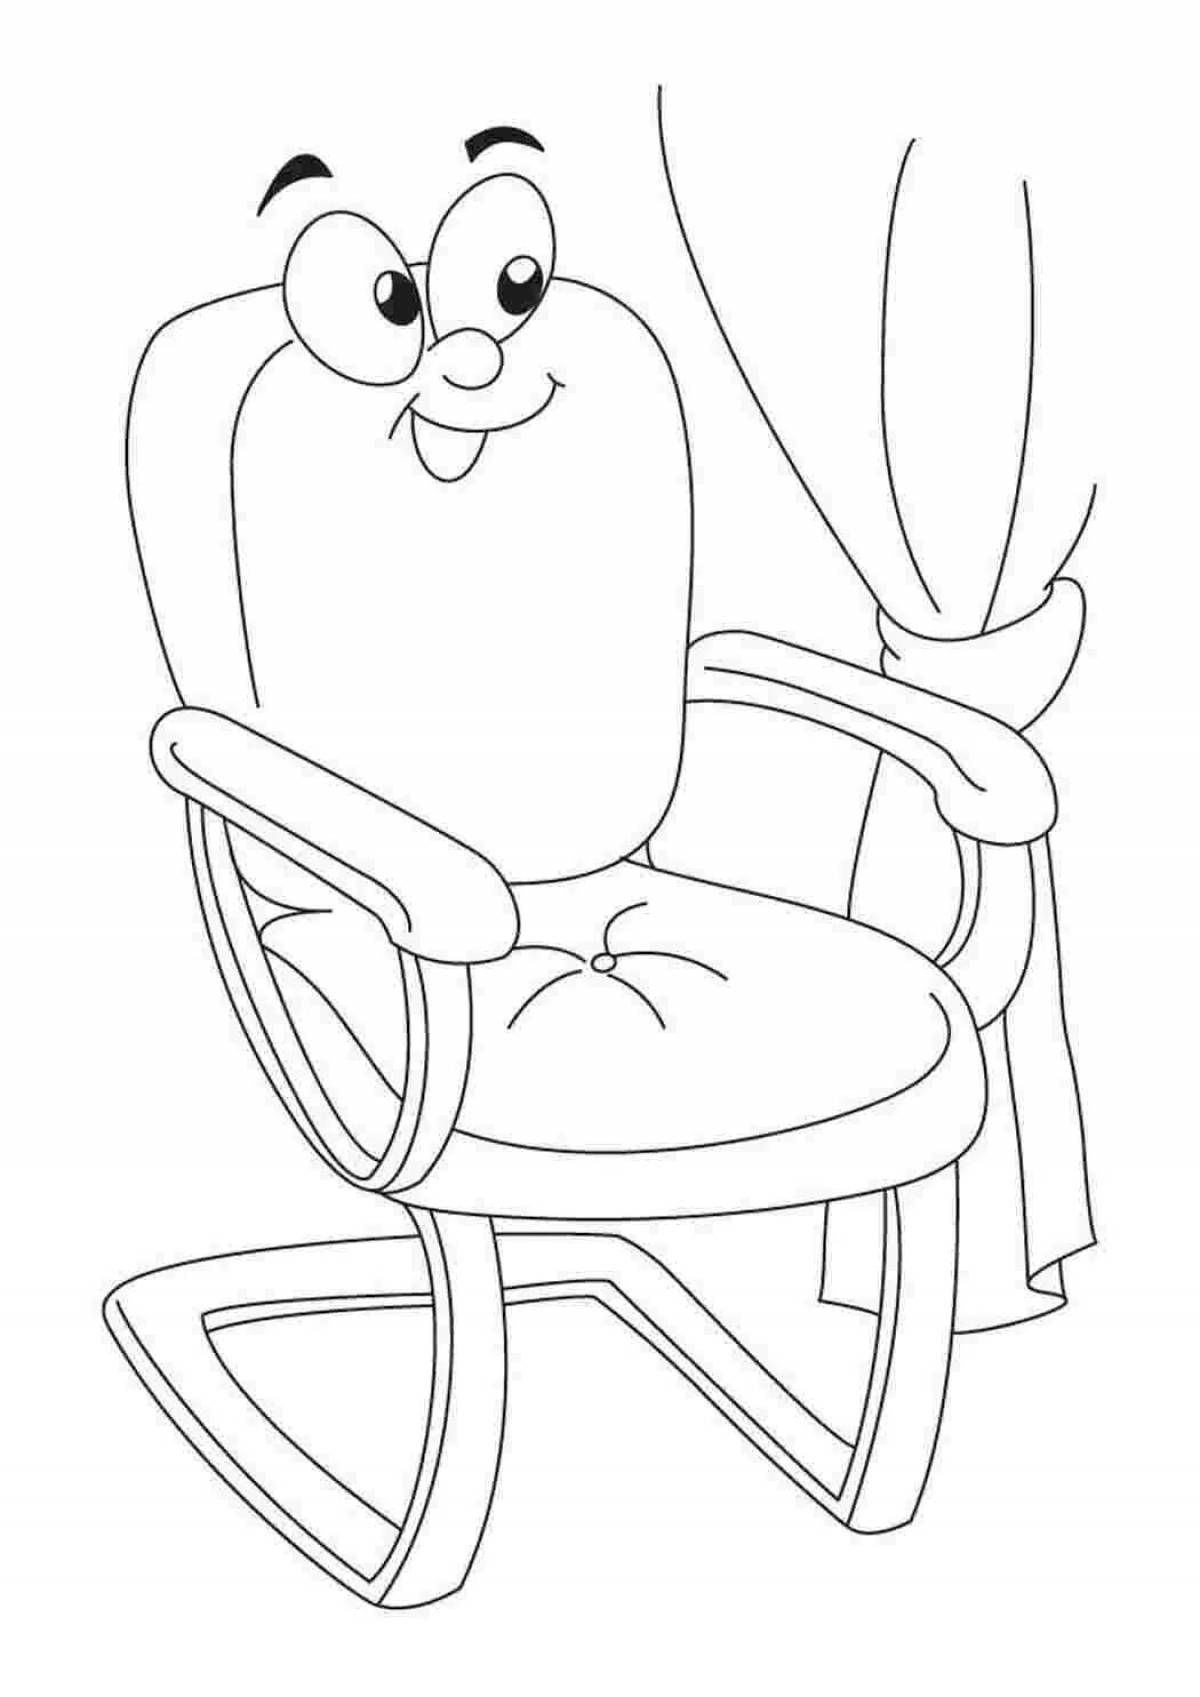 Удивительное кресло-раскраска для детей 4-5 лет